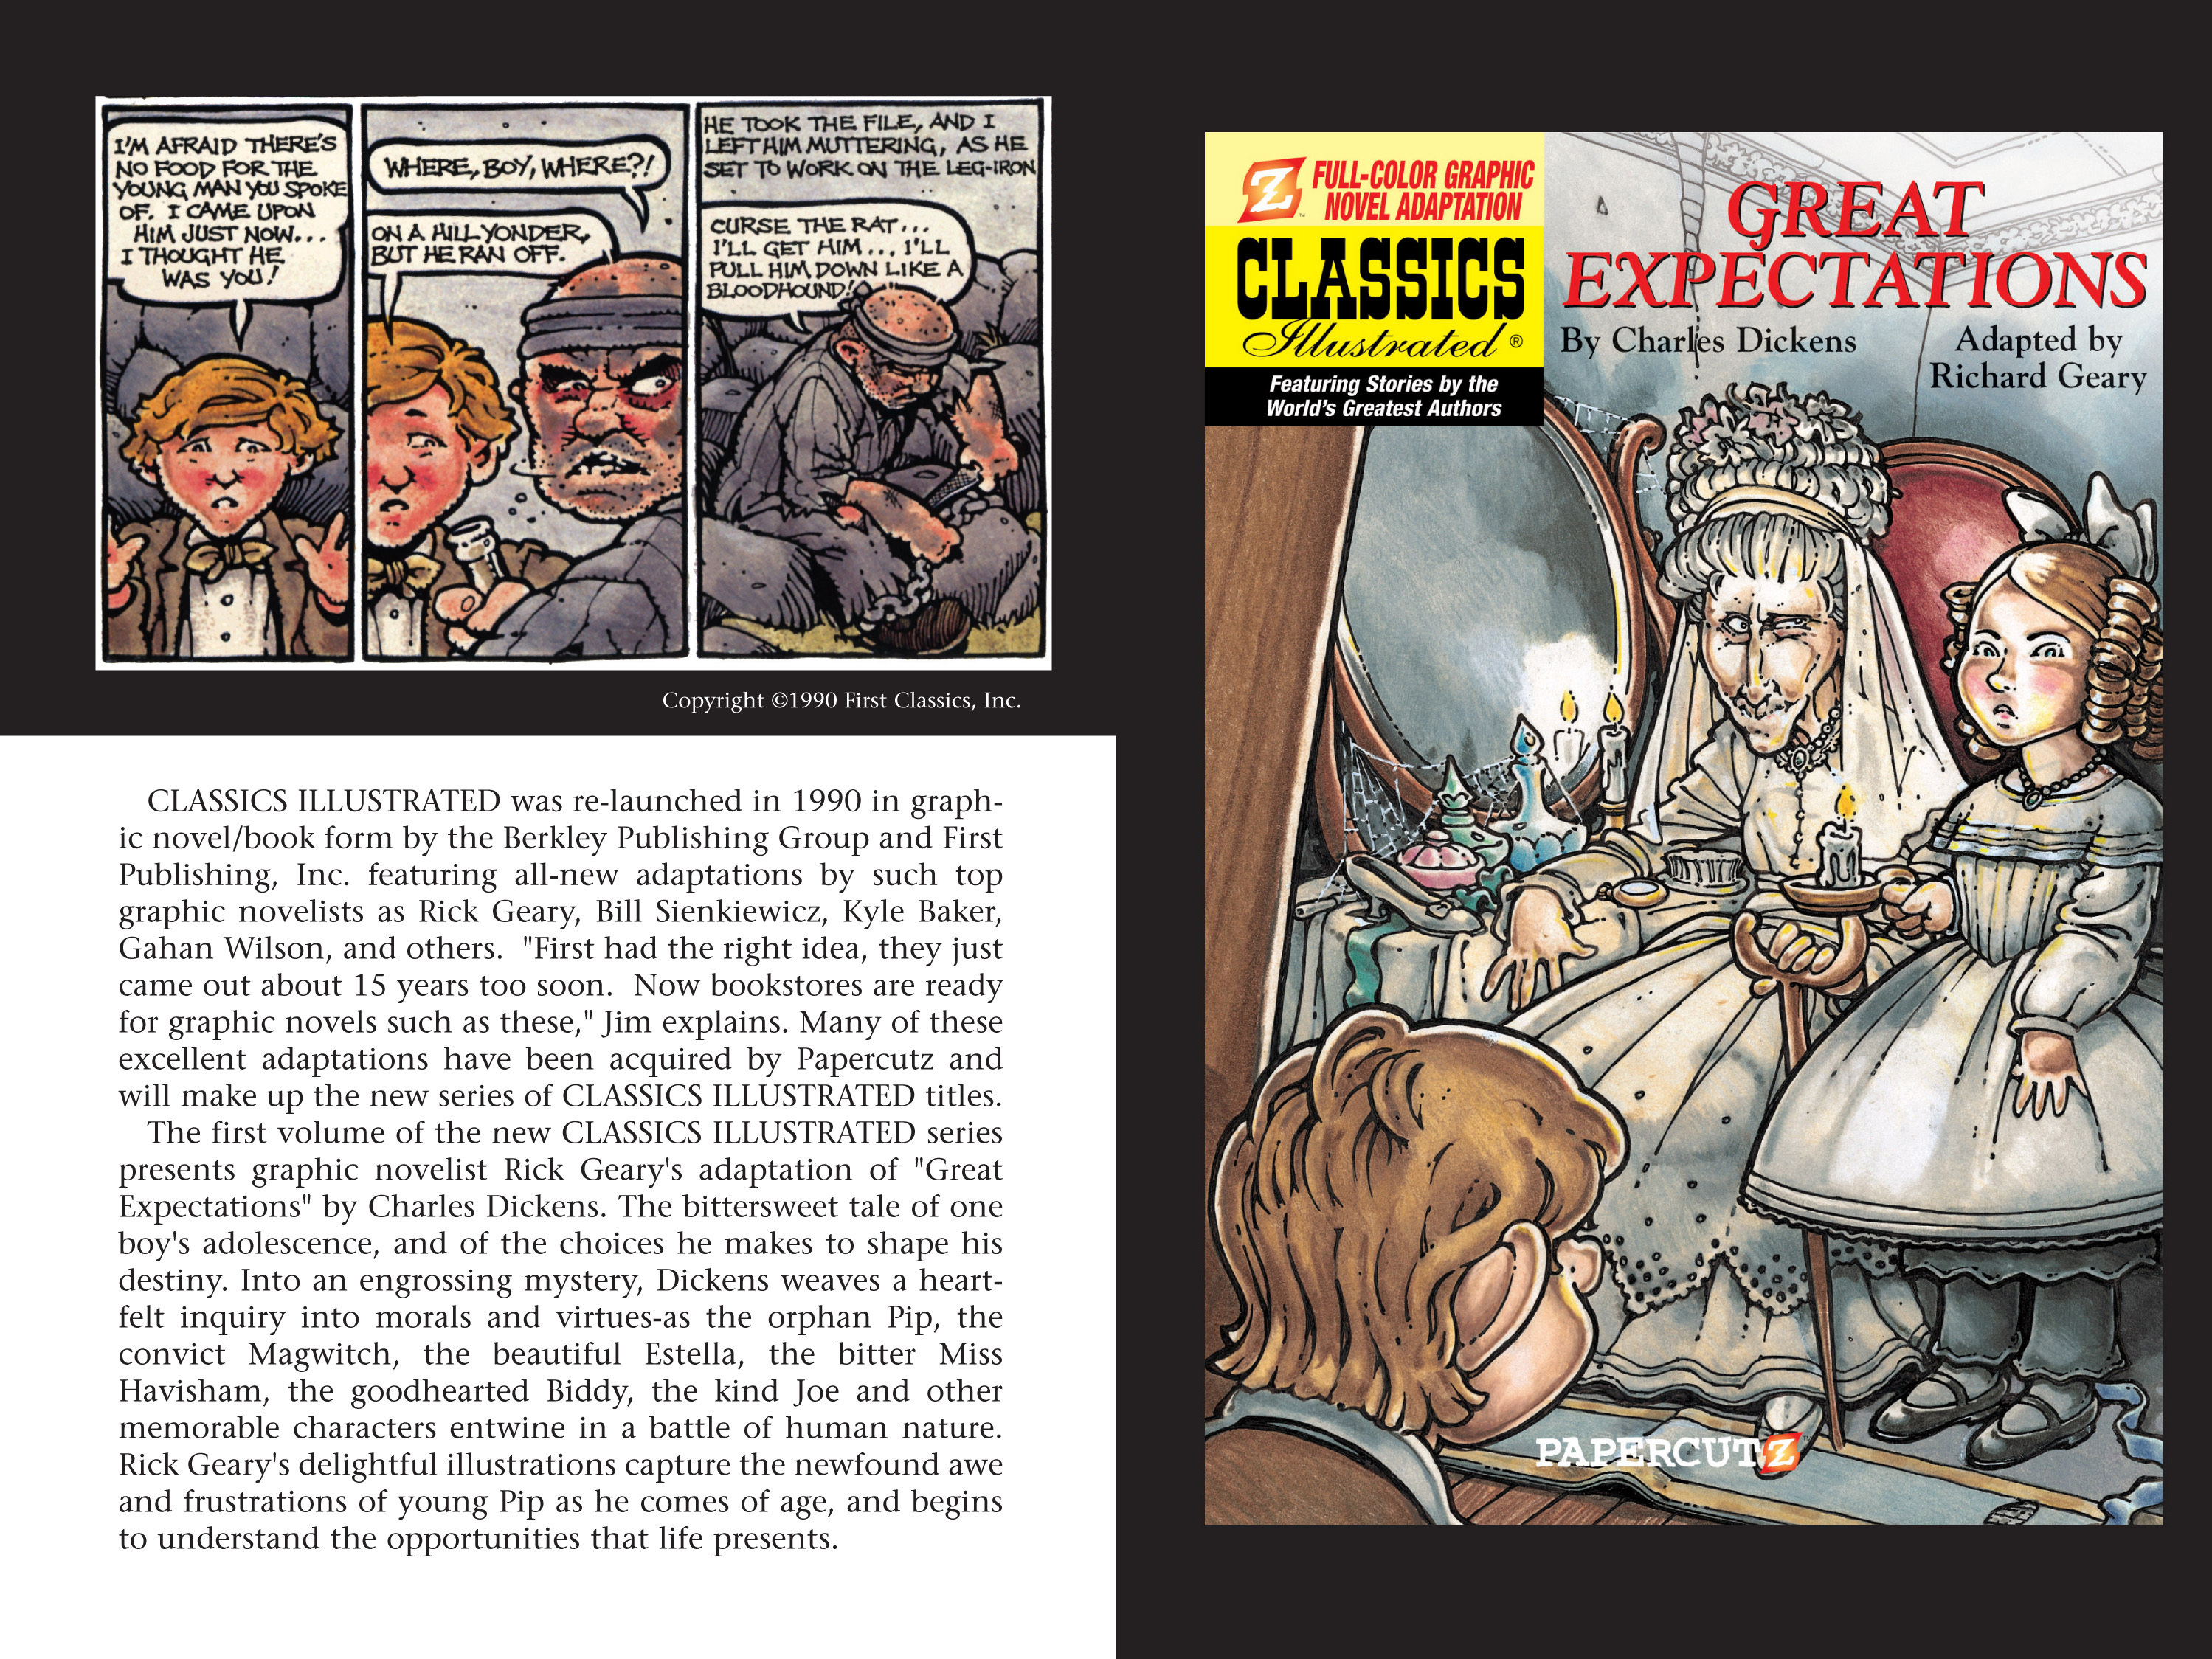 Read online Nancy Drew comic -  Issue #11 - 110